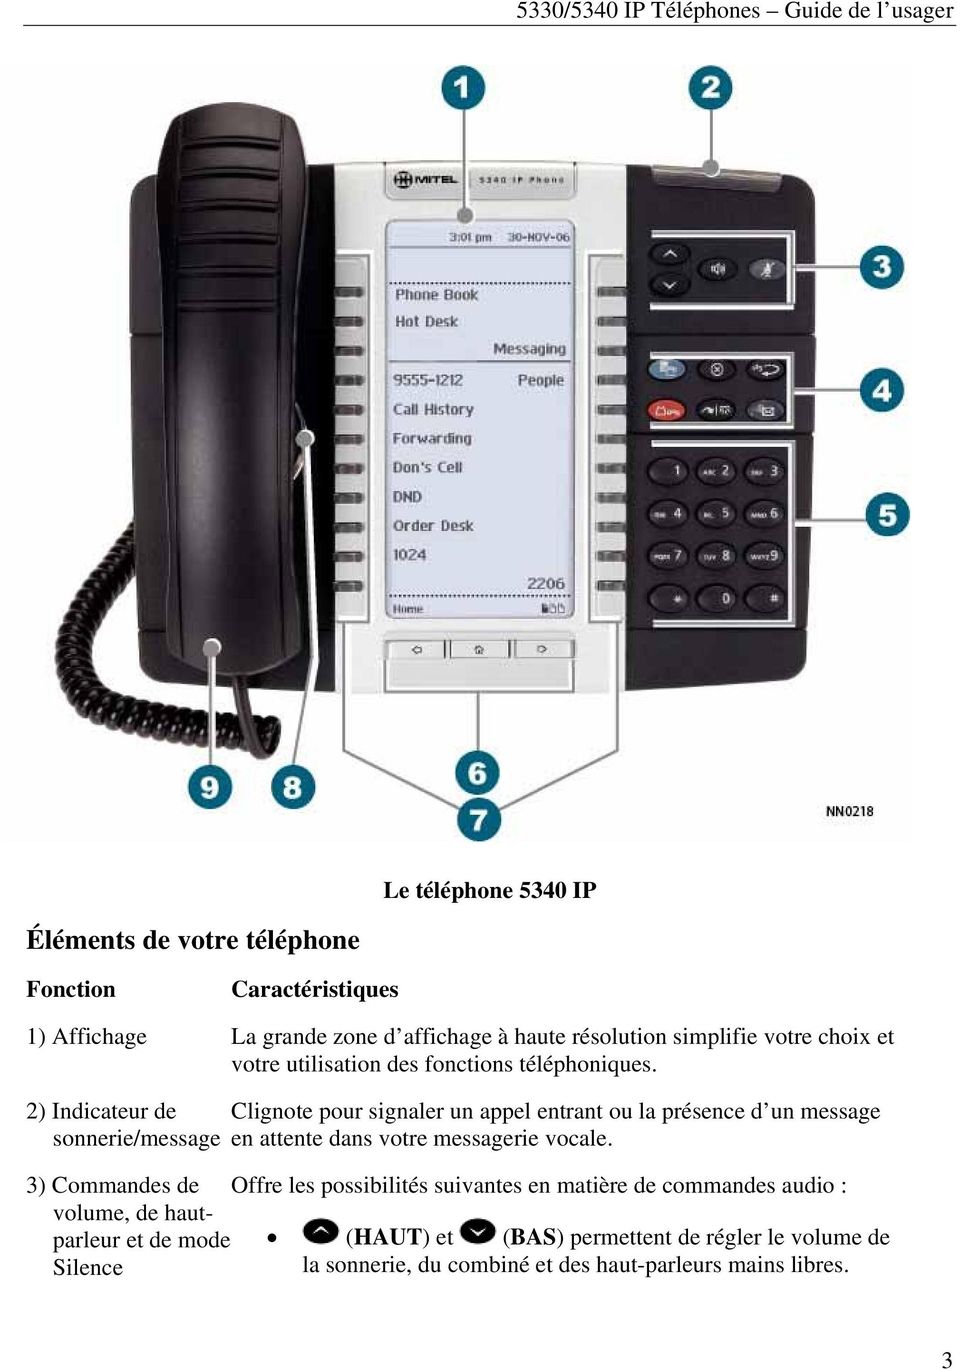 2) Indicateur de sonnerie/message 3) Commandes de volume, de hautparleur et de mode Silence Clignote pour signaler un appel entrant ou la présence d un